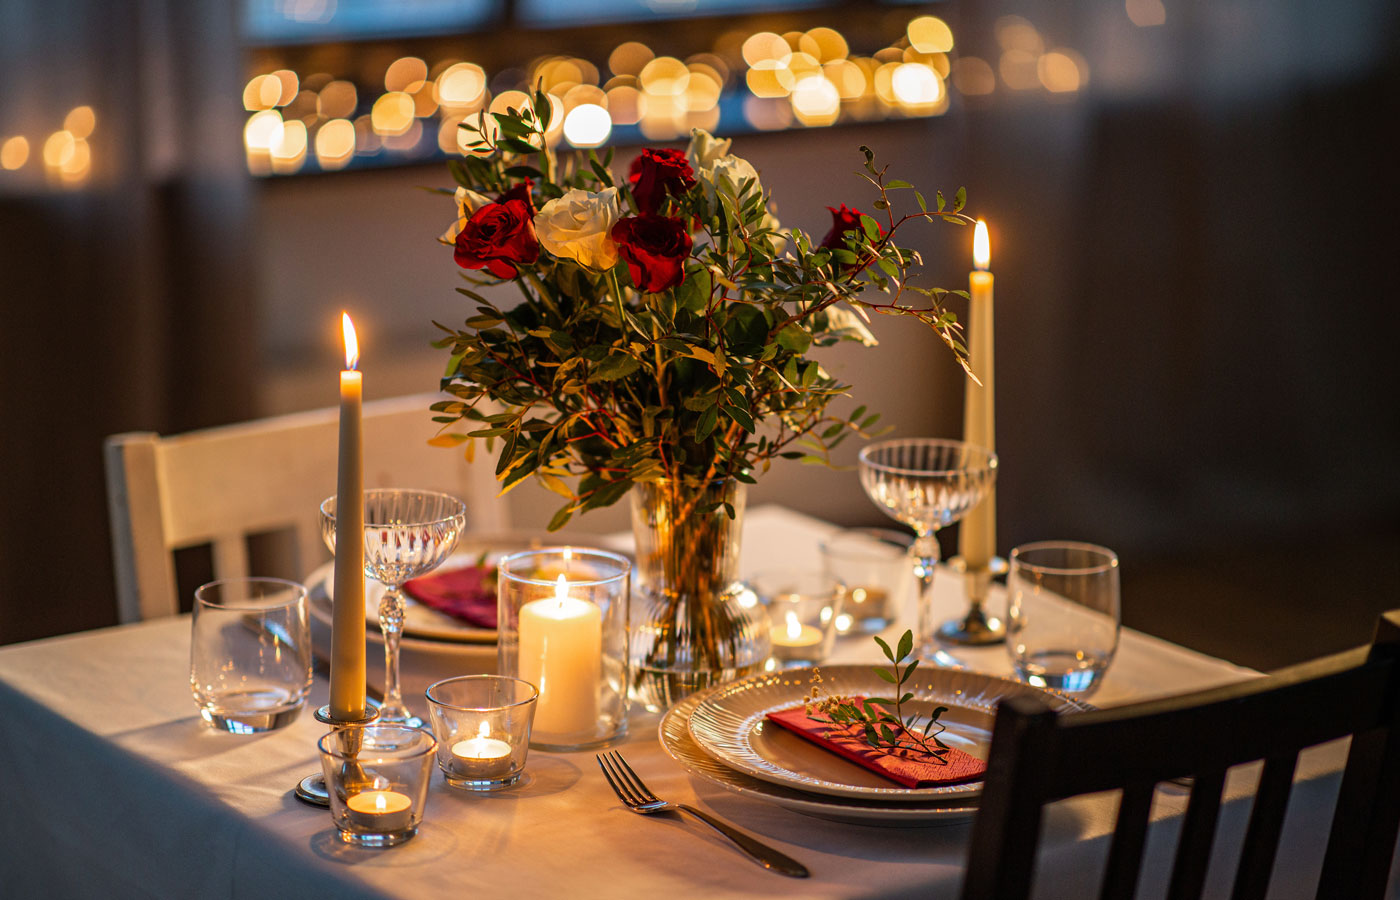 flower table serving for romantic dinner